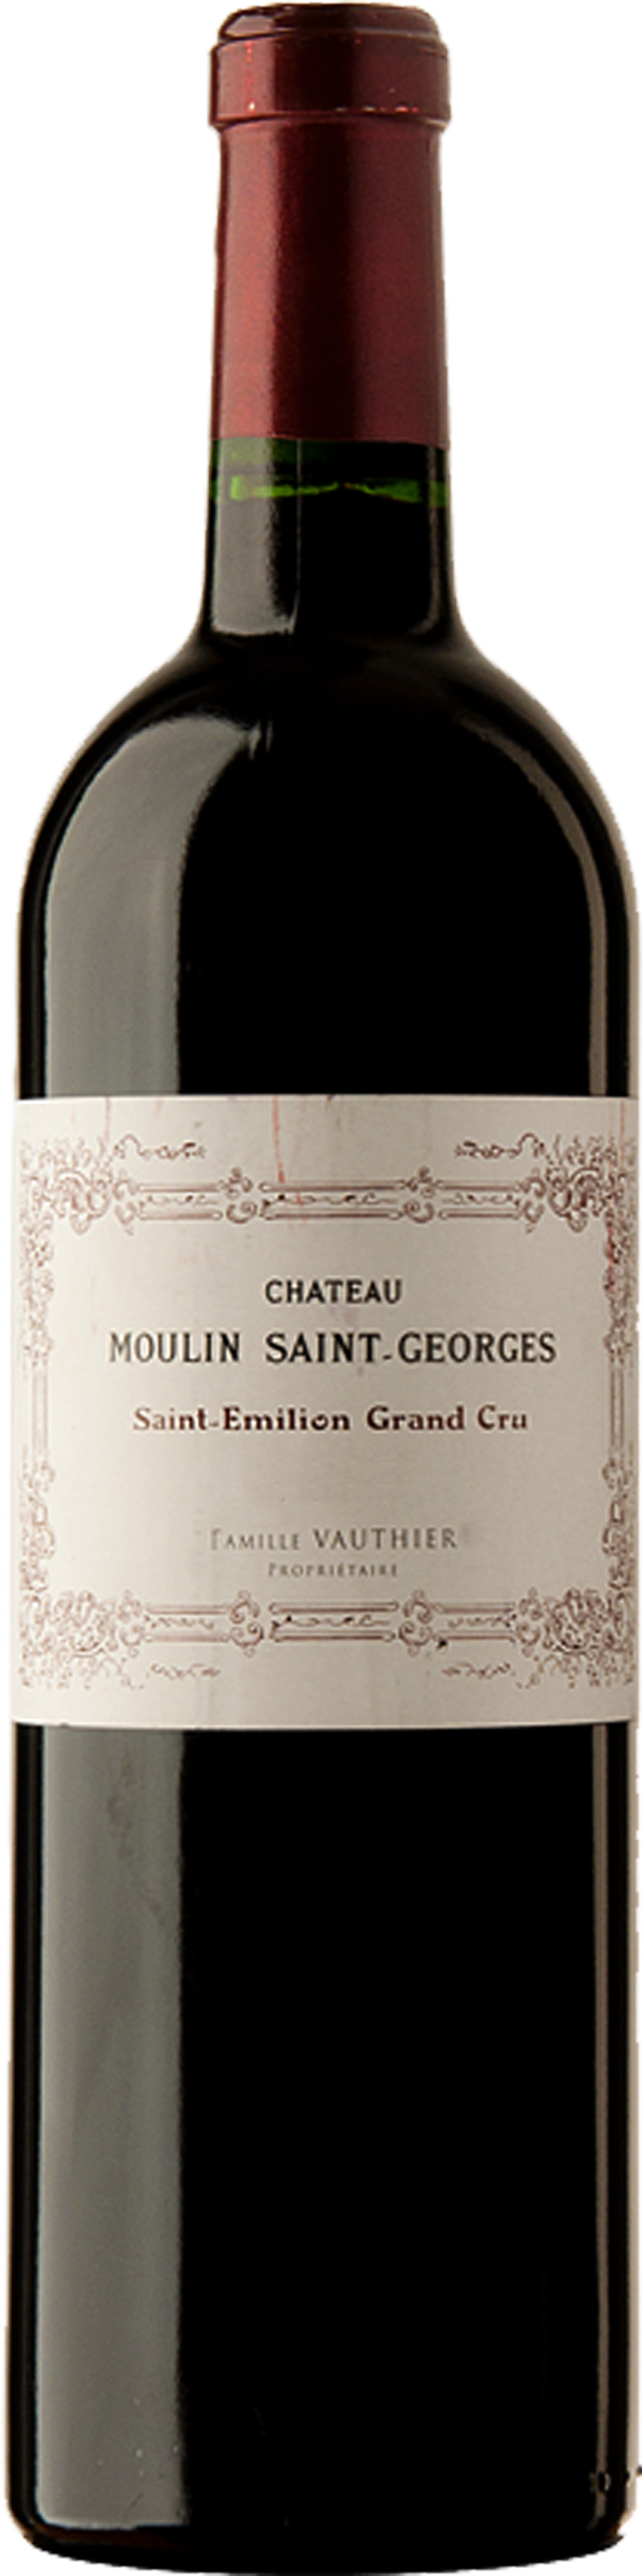 Bottle shot of 2009 Château Moulin St Georges, St Emilion